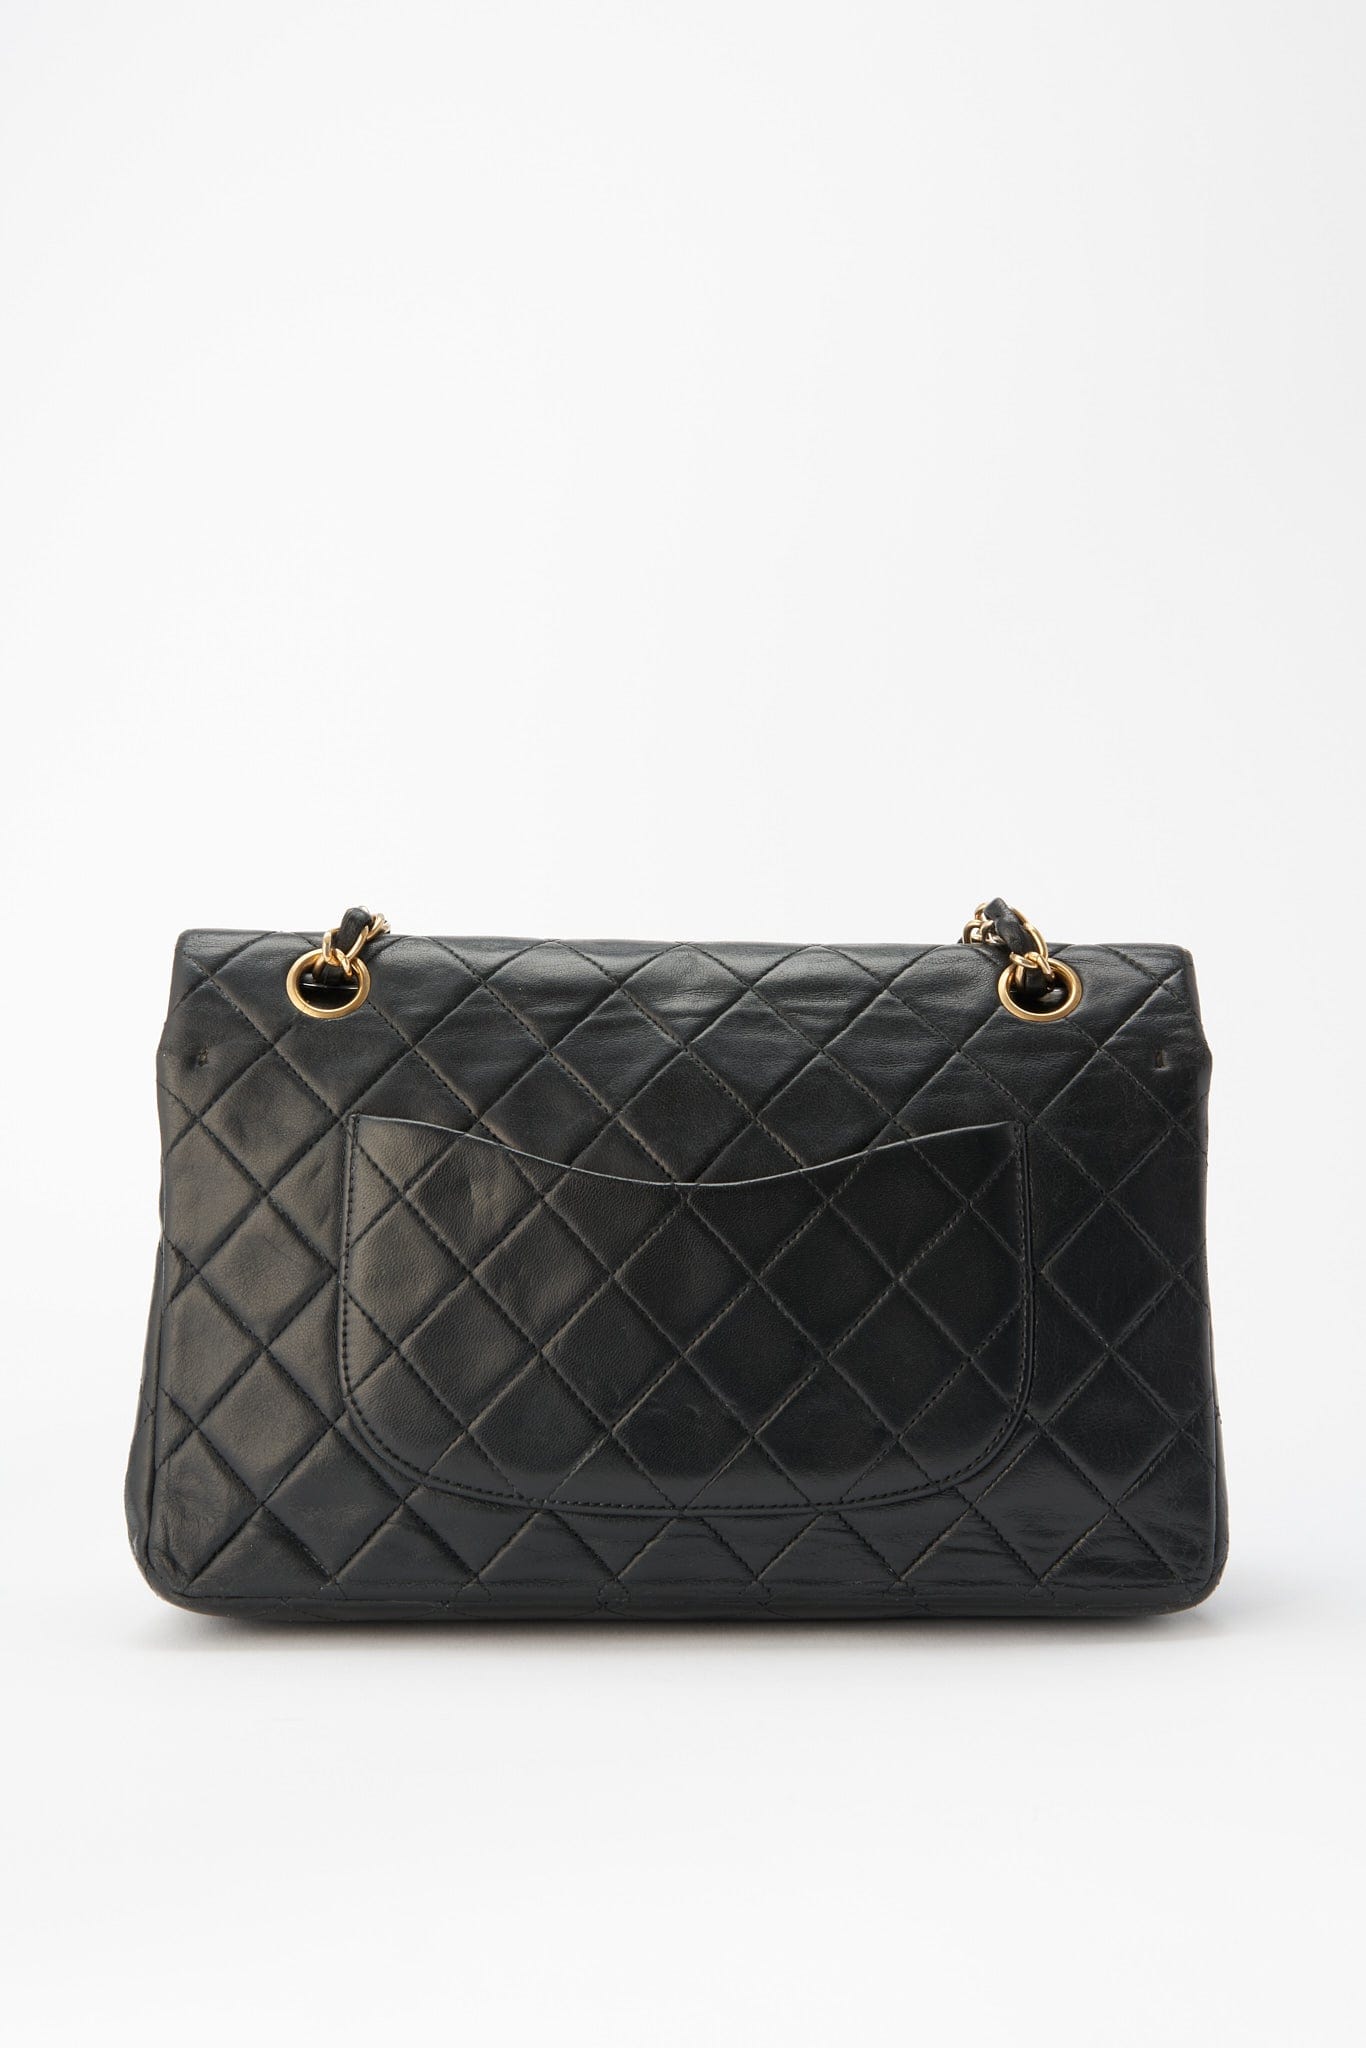 Black Jumbo Chanel Bag, Vintage Chanel Bag, Black Designer Bag